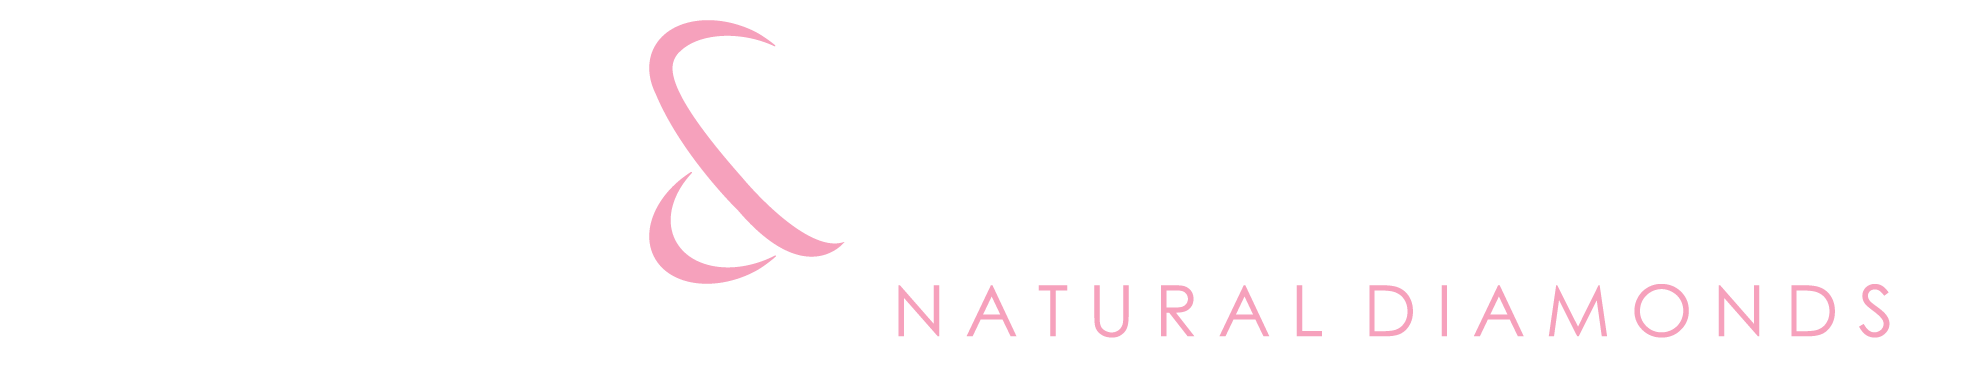 Rare and Forever logo